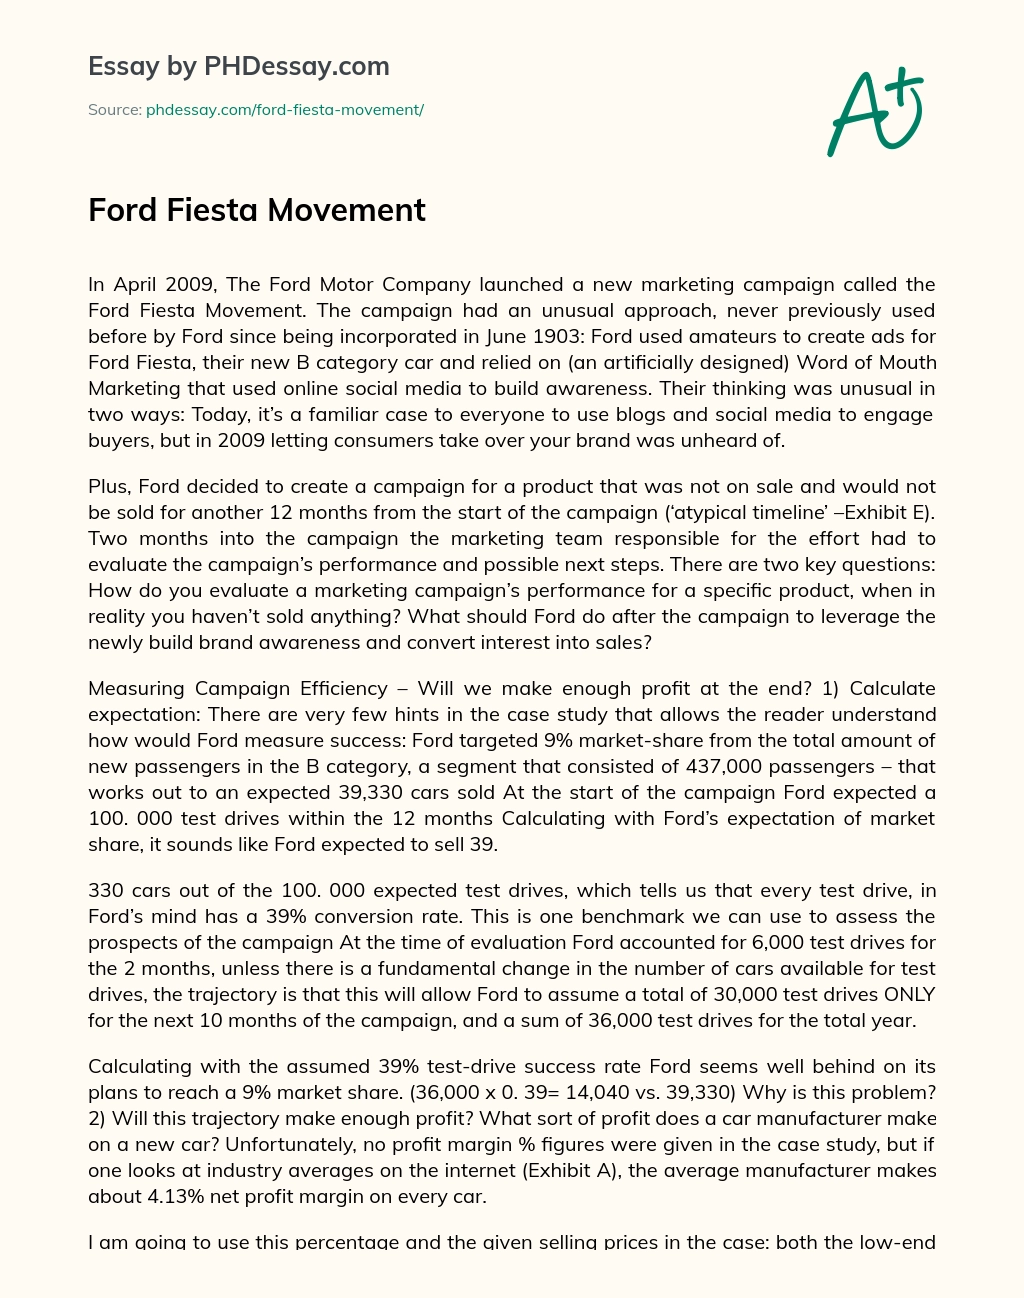 Ford Fiesta Movement essay